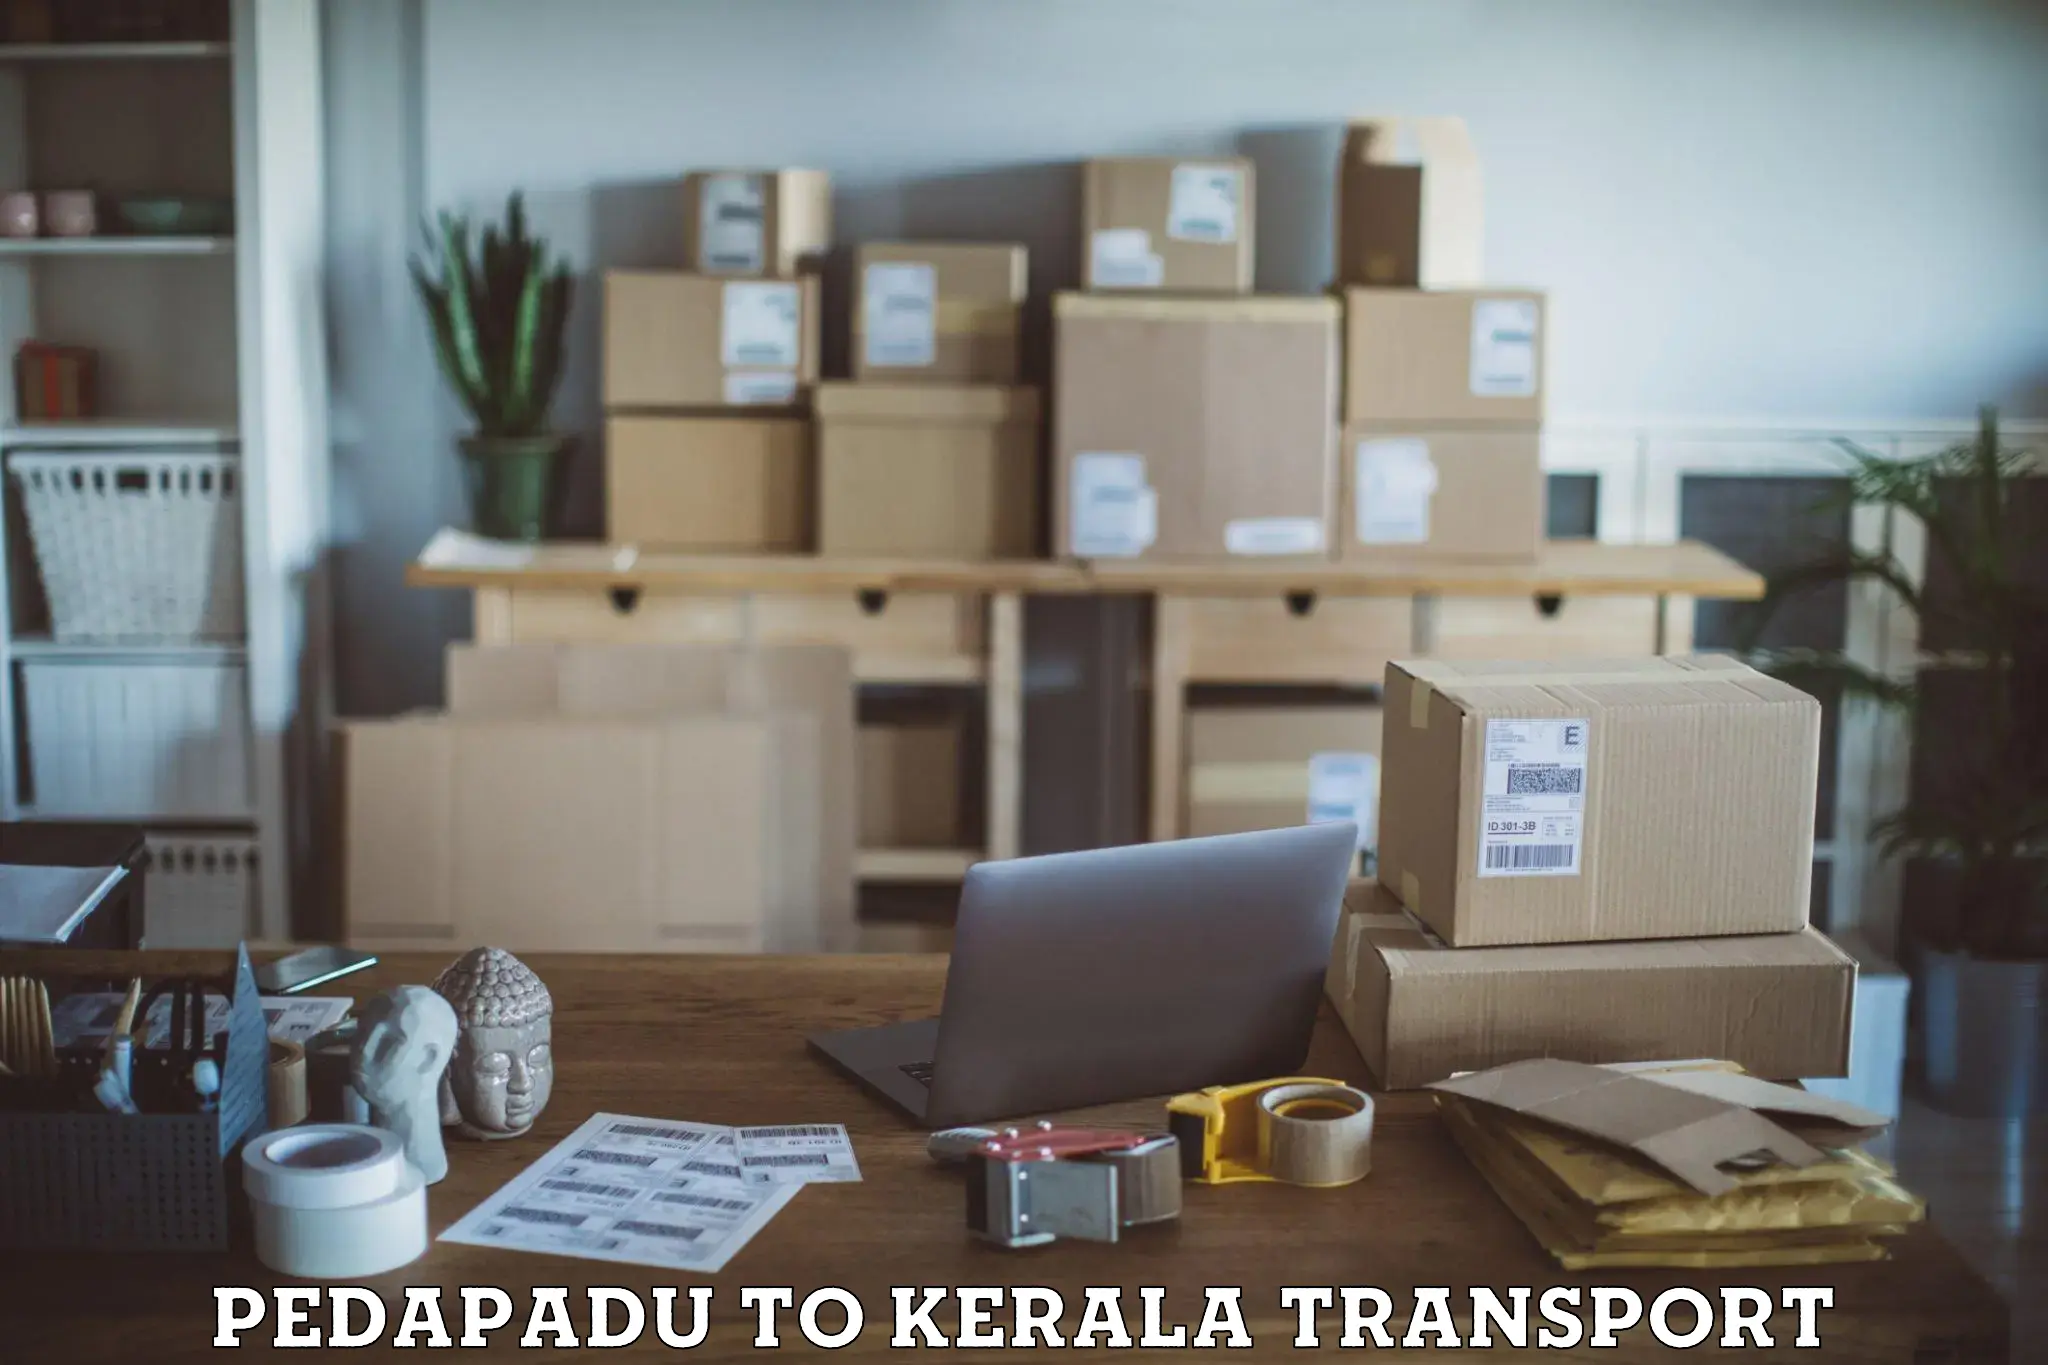 Daily transport service Pedapadu to Munnar